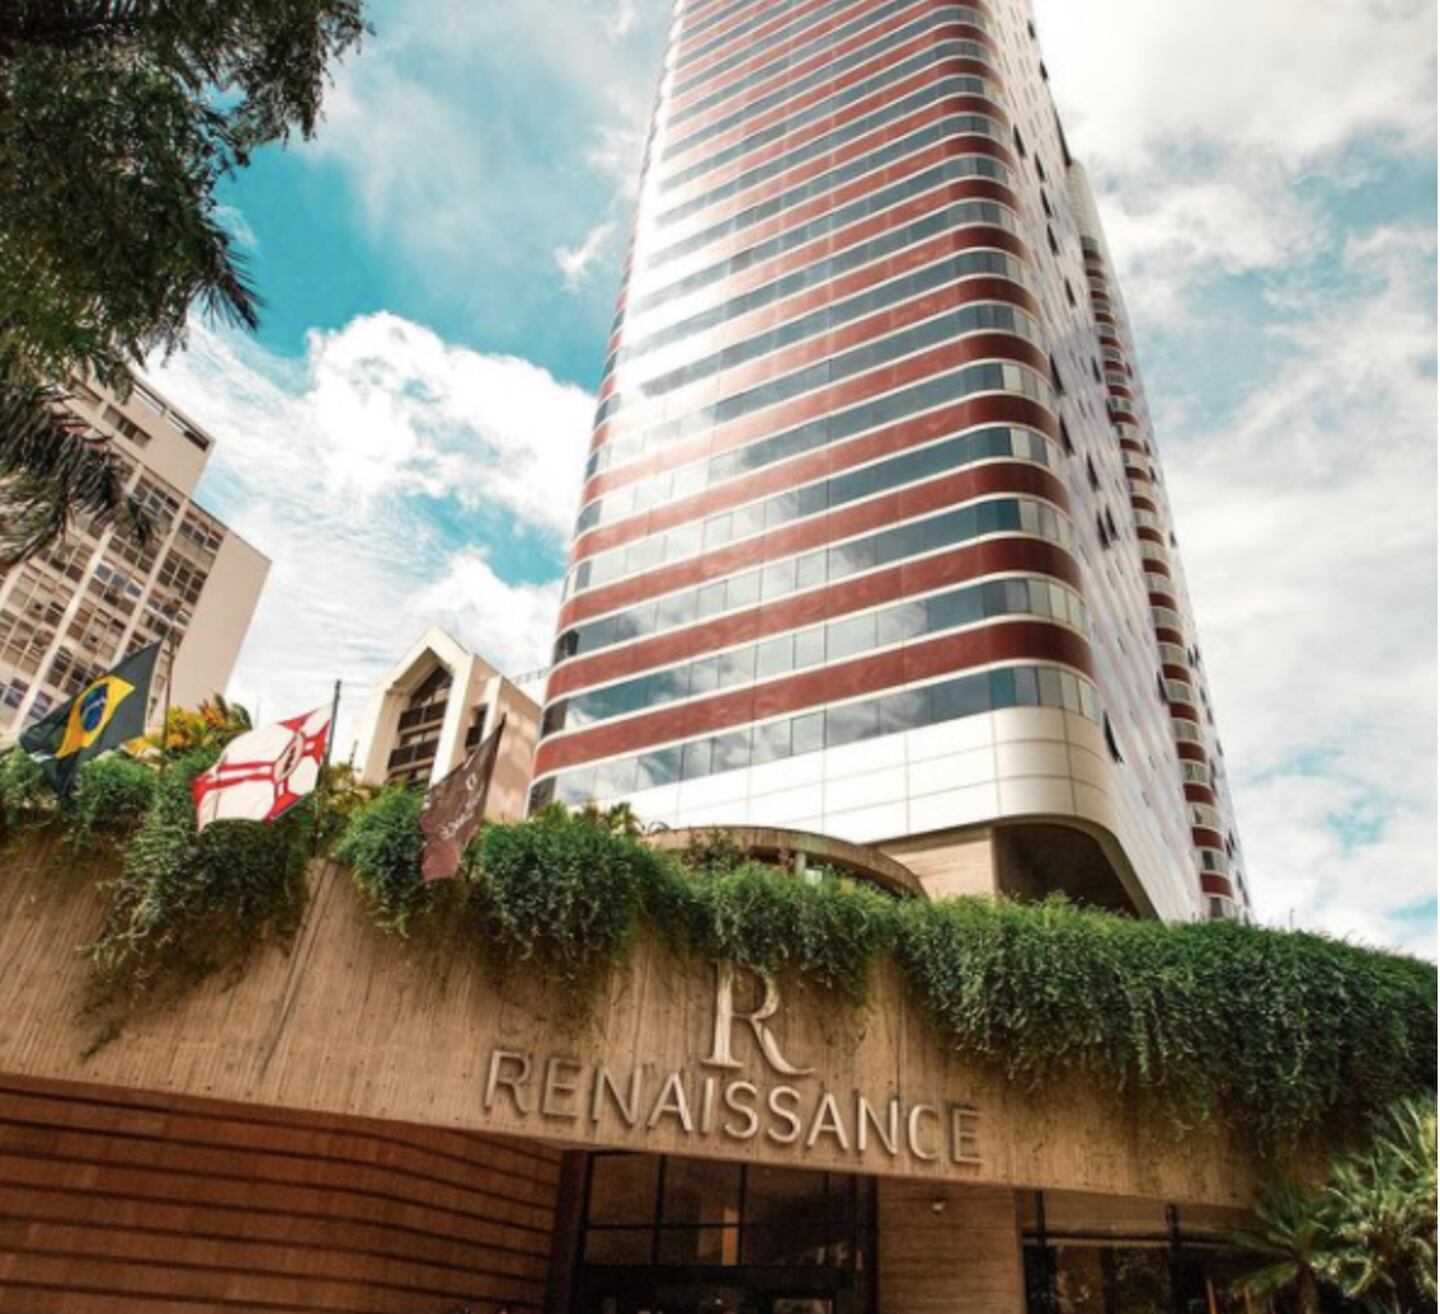 Hotel Renaissance, em São Paulodfd